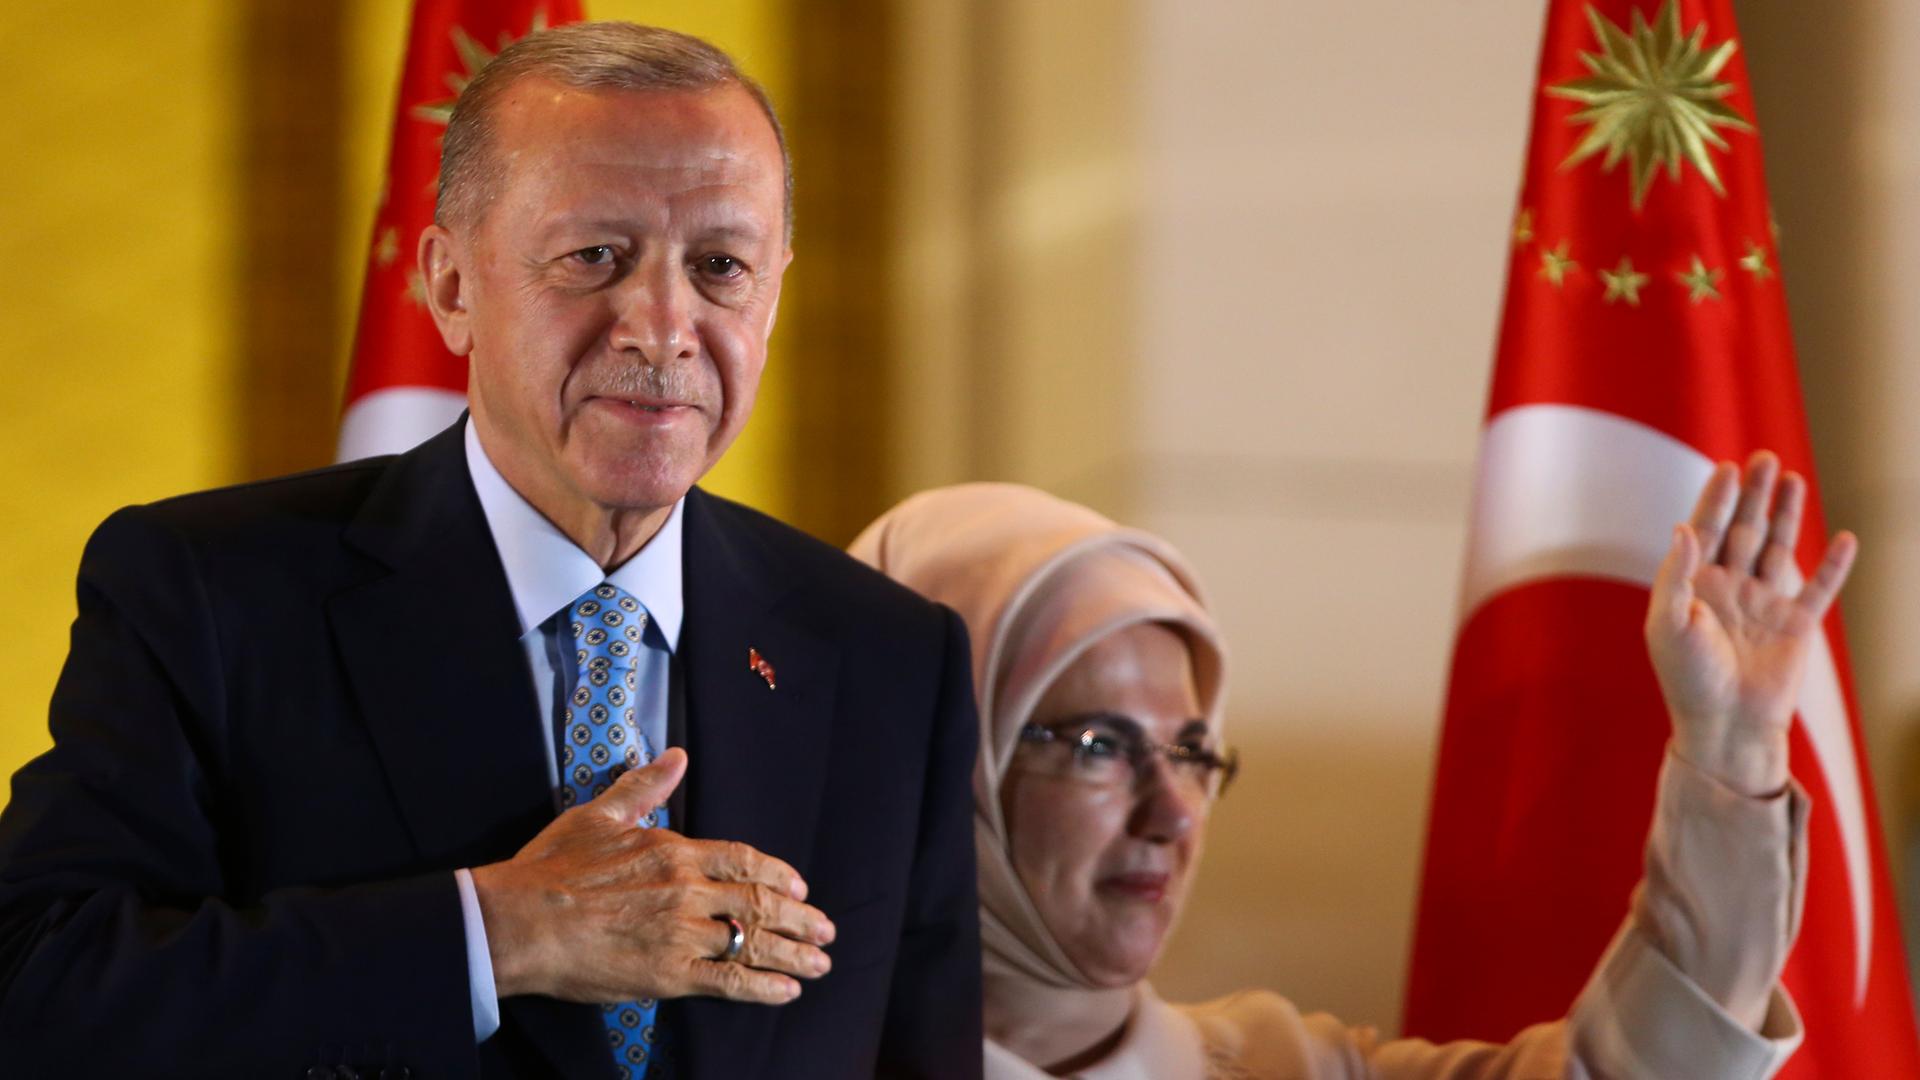 Türkei - Präsident Erdogan wird nach Wiederwahl vereidigt